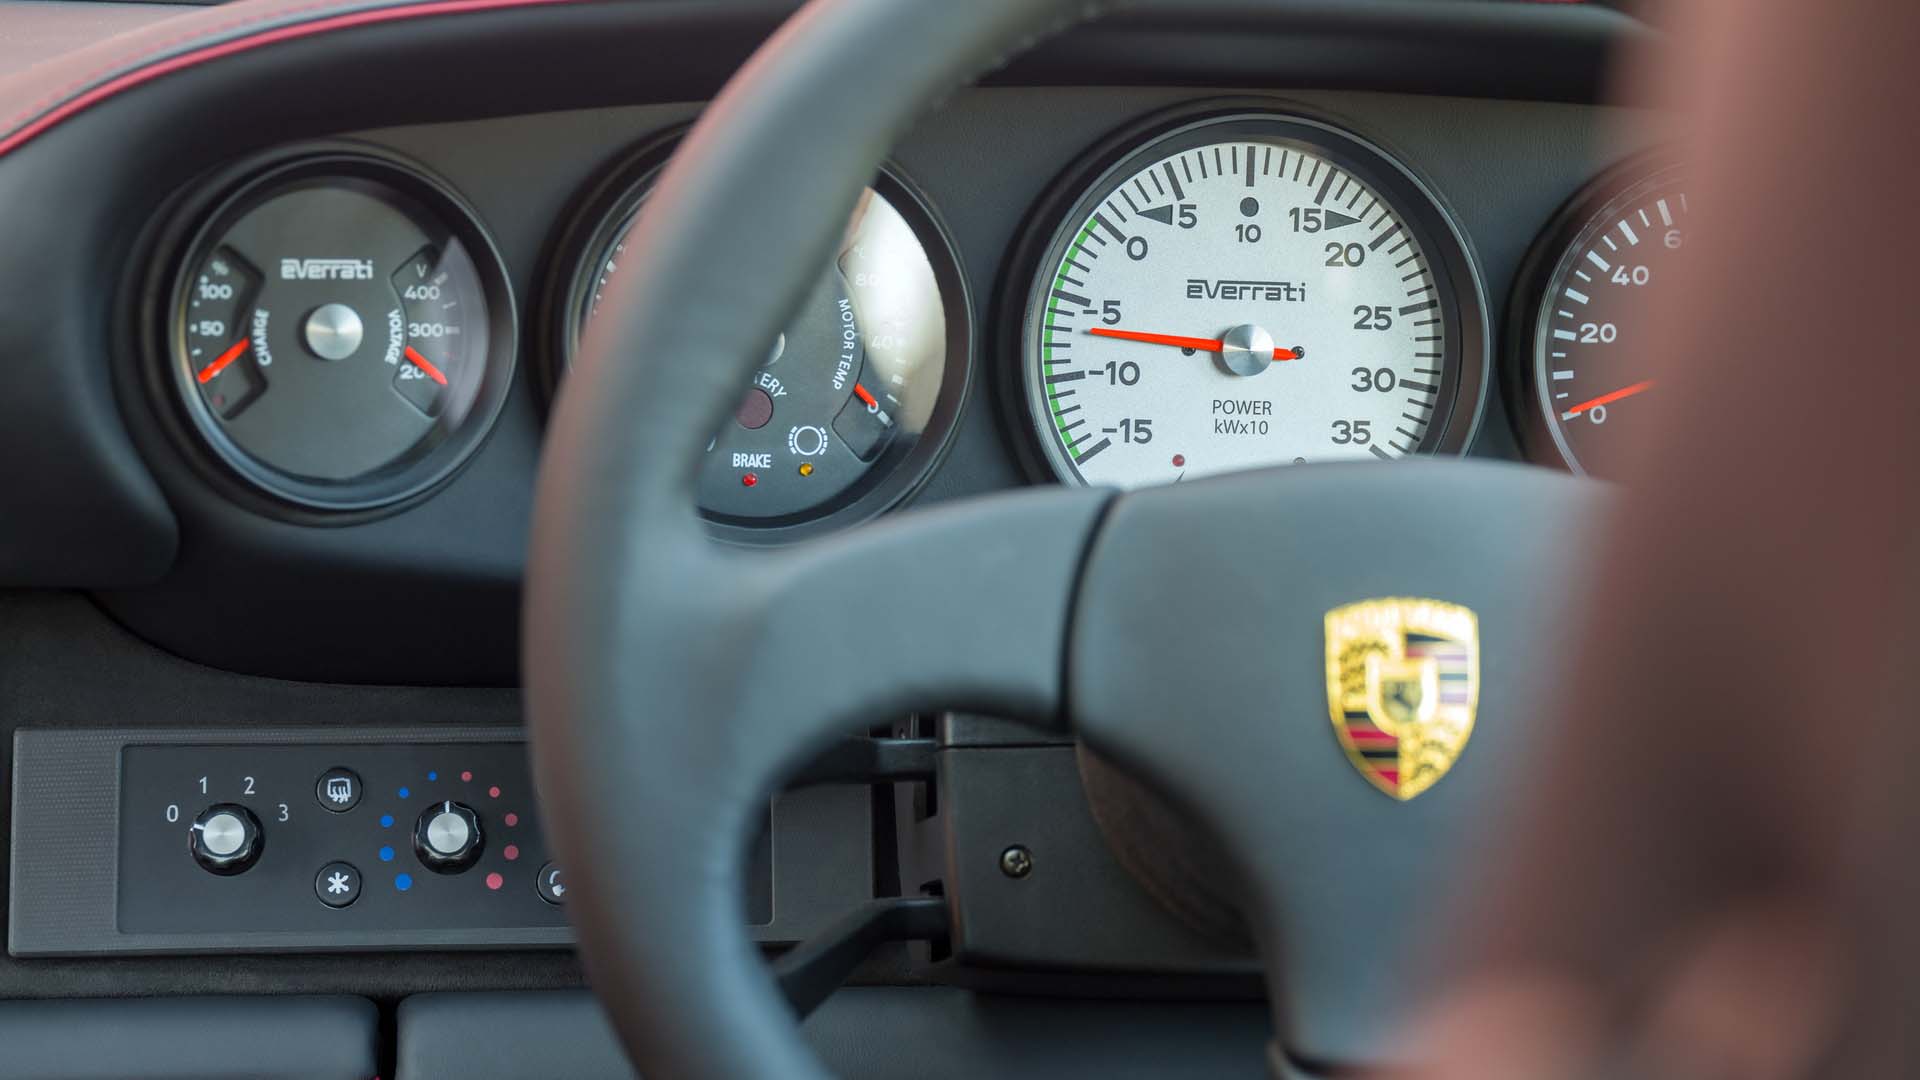 فرمان و جلو داشپورد خودروی برقی پورشه 911 اوررتی / Everrati Porsche 911 EV  قرمز رنگ